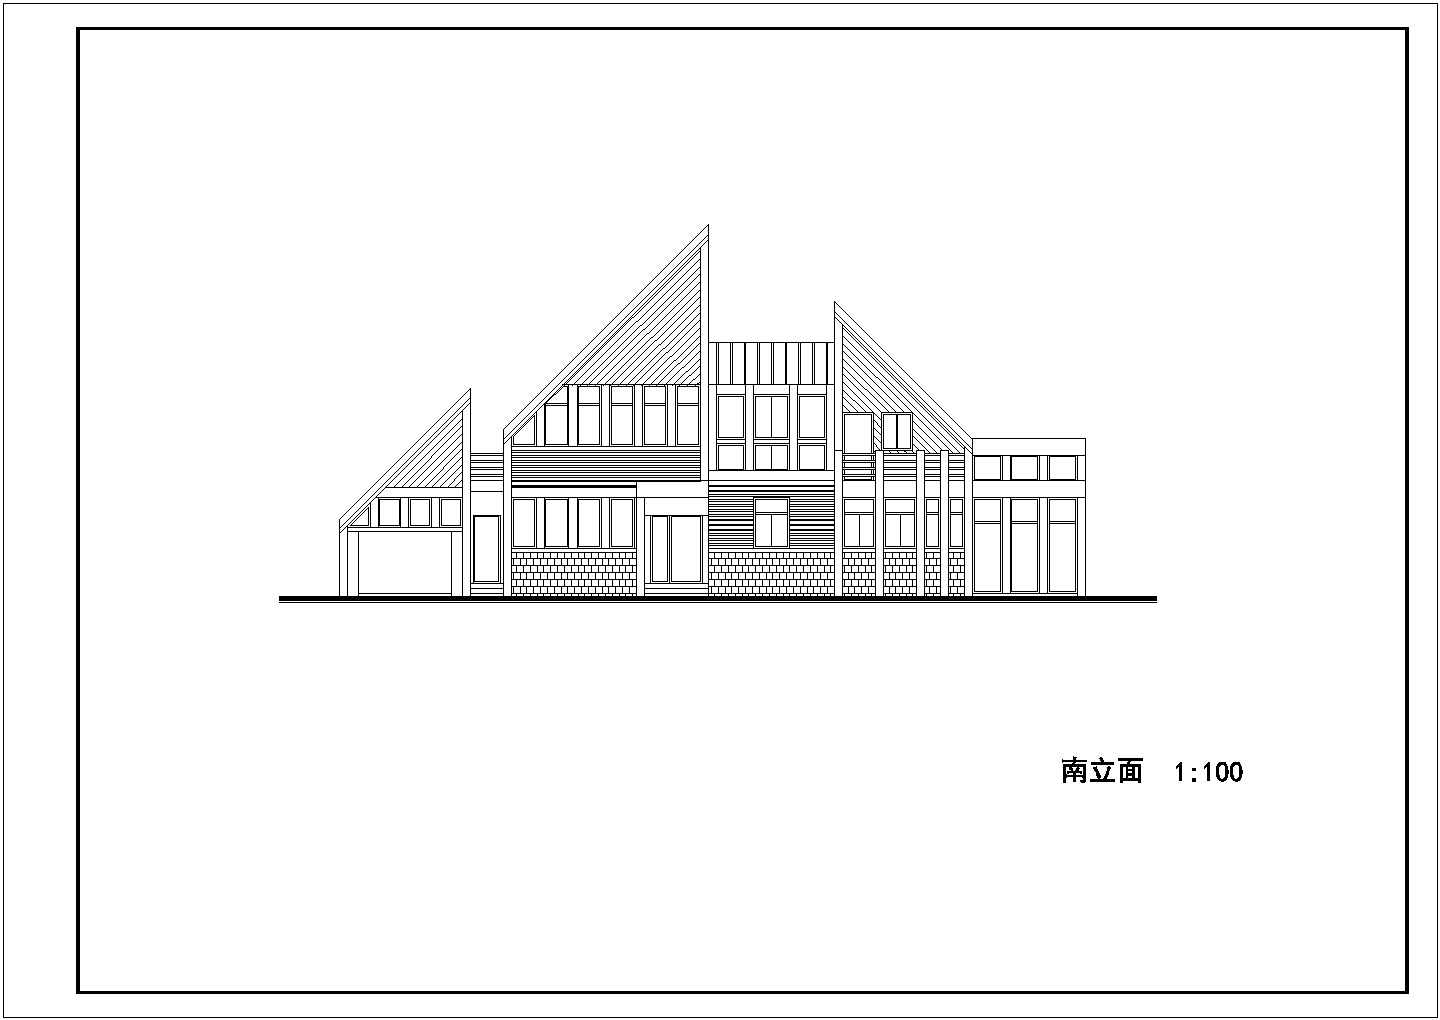 山地风情现代风格独栋别墅方案设计图